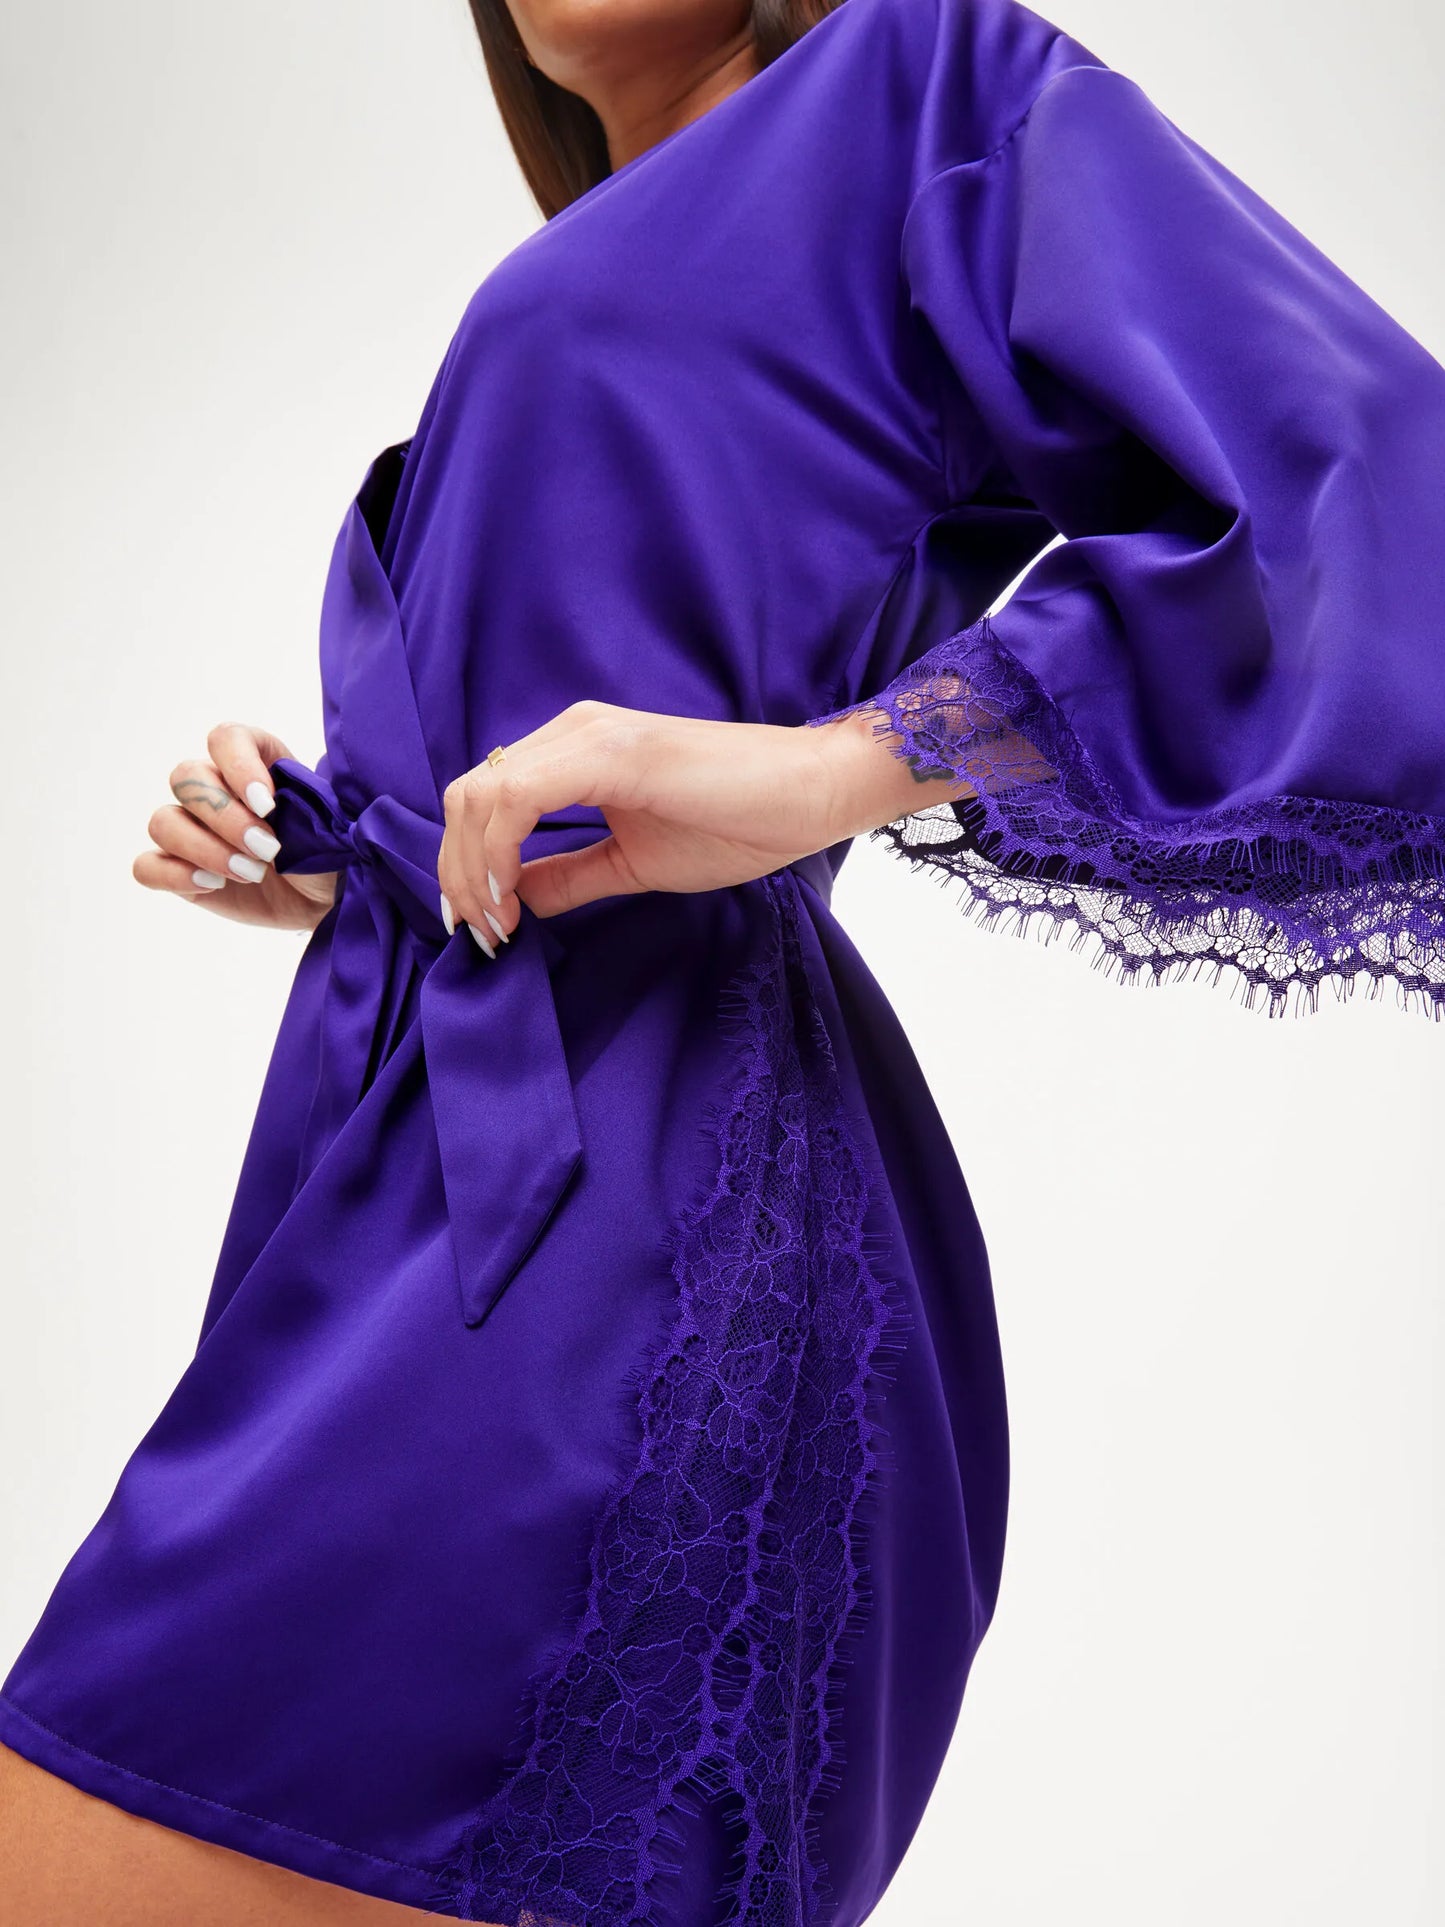 Cherryann Robe Dark Purple From Ann Summers, Image 01